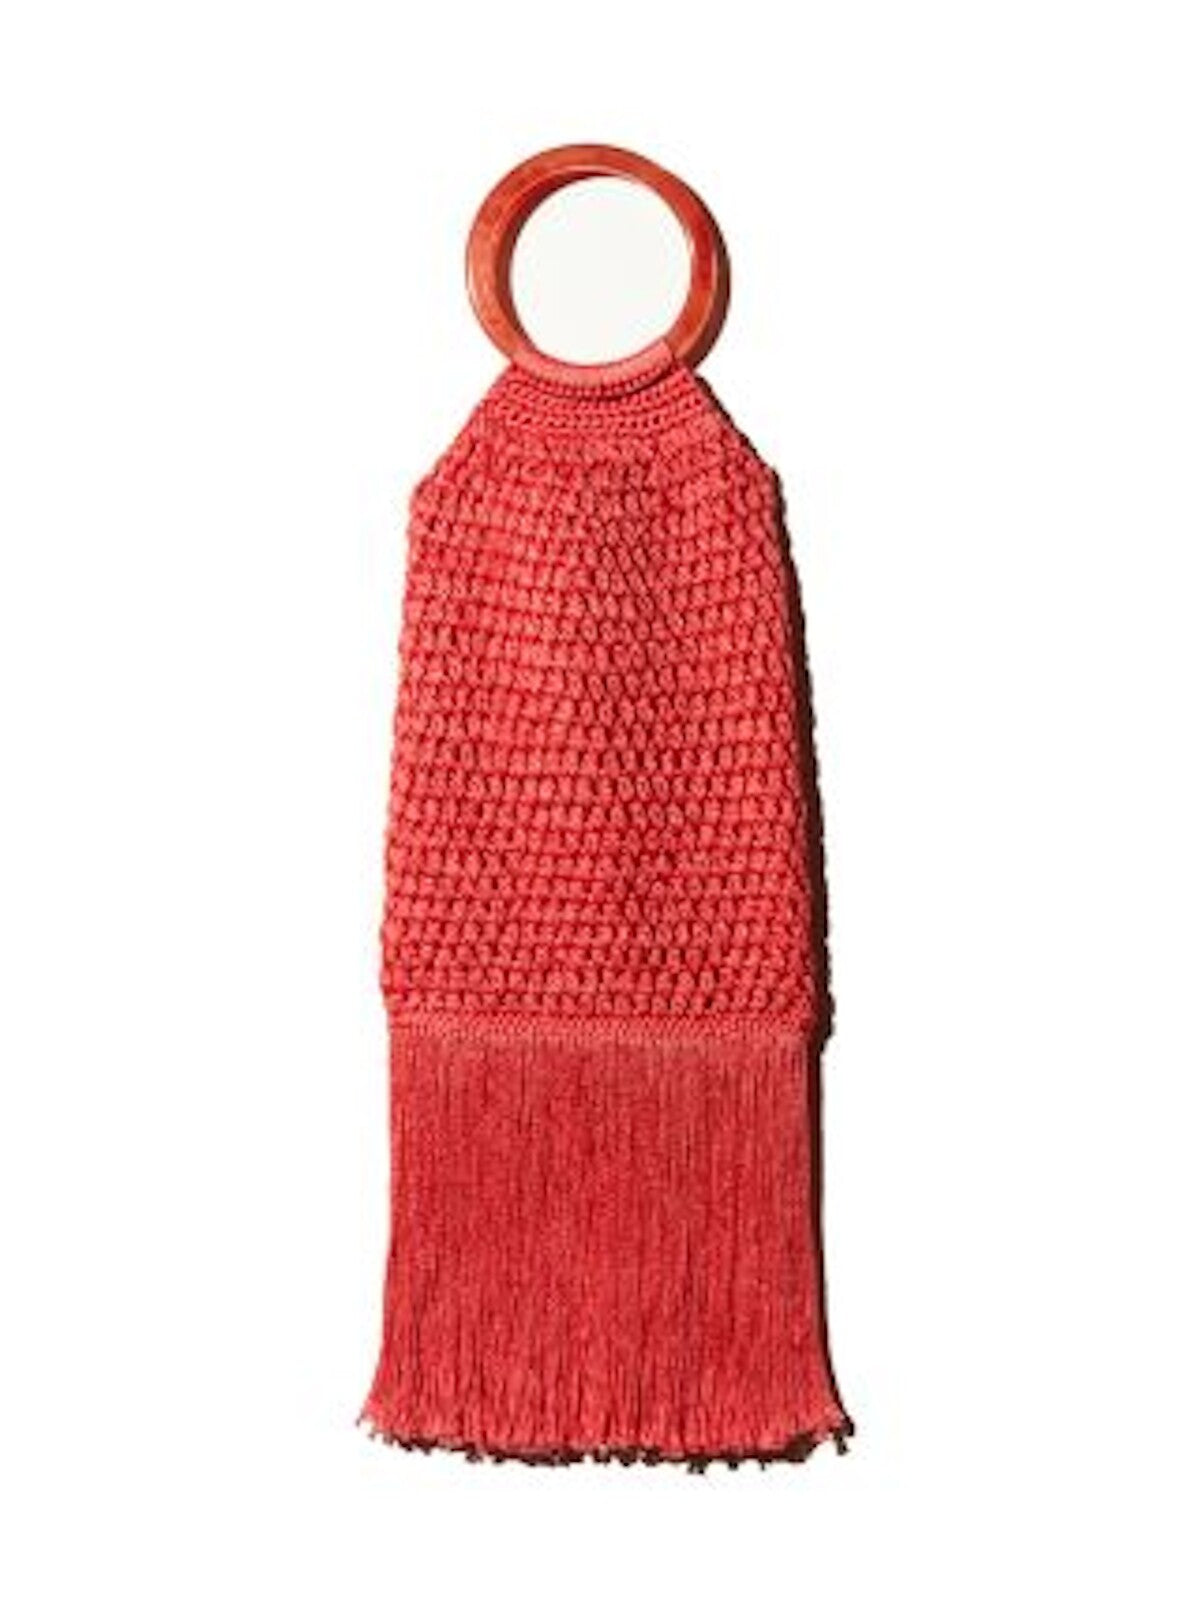 Binge Women's Pink Crochet Fringe Crochet Double Flat Strap Handbag Purse